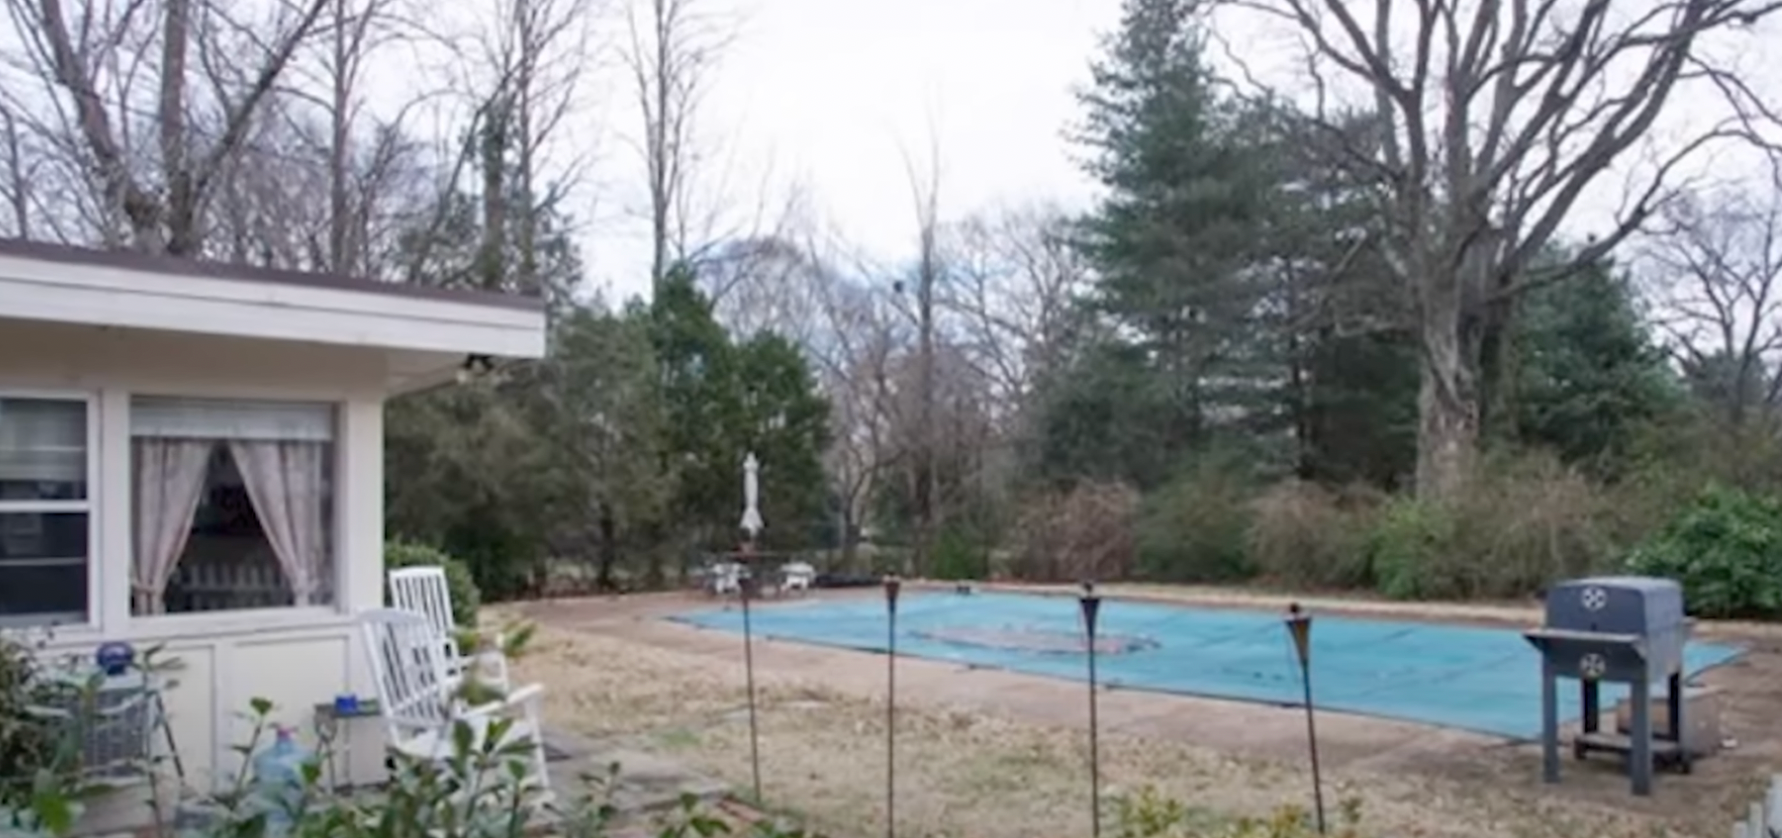 La piscine de la maison familiale de Reese Witherspoon et Jim Toth à Nashville | Source : YouTube/@FamousEntertainment